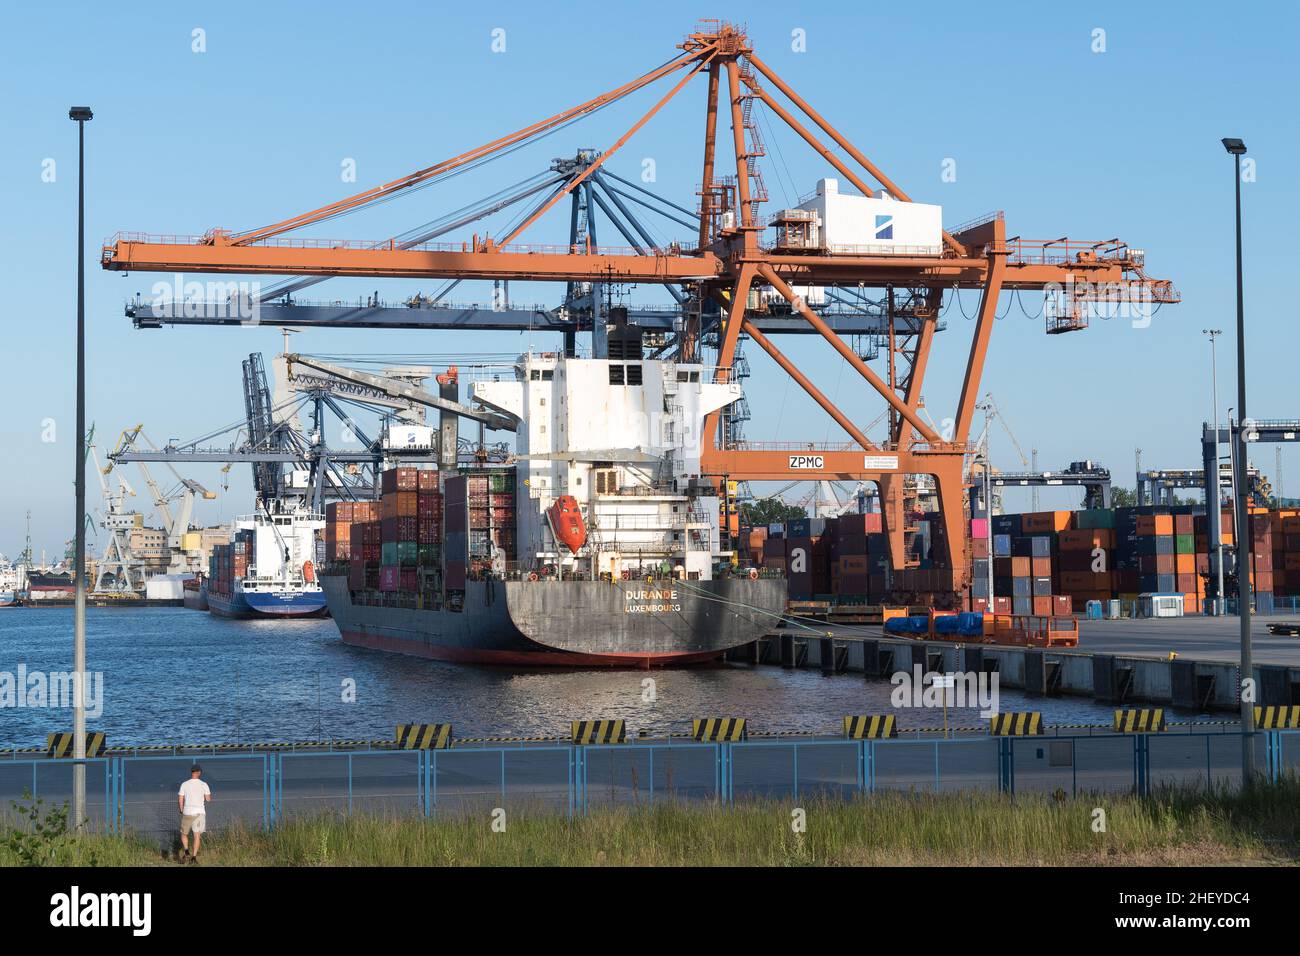 Baltic Container Terminal BCT in Gdynia, Poland © Wojciech Strozyk / Alamy Stock Photo Stock Photo